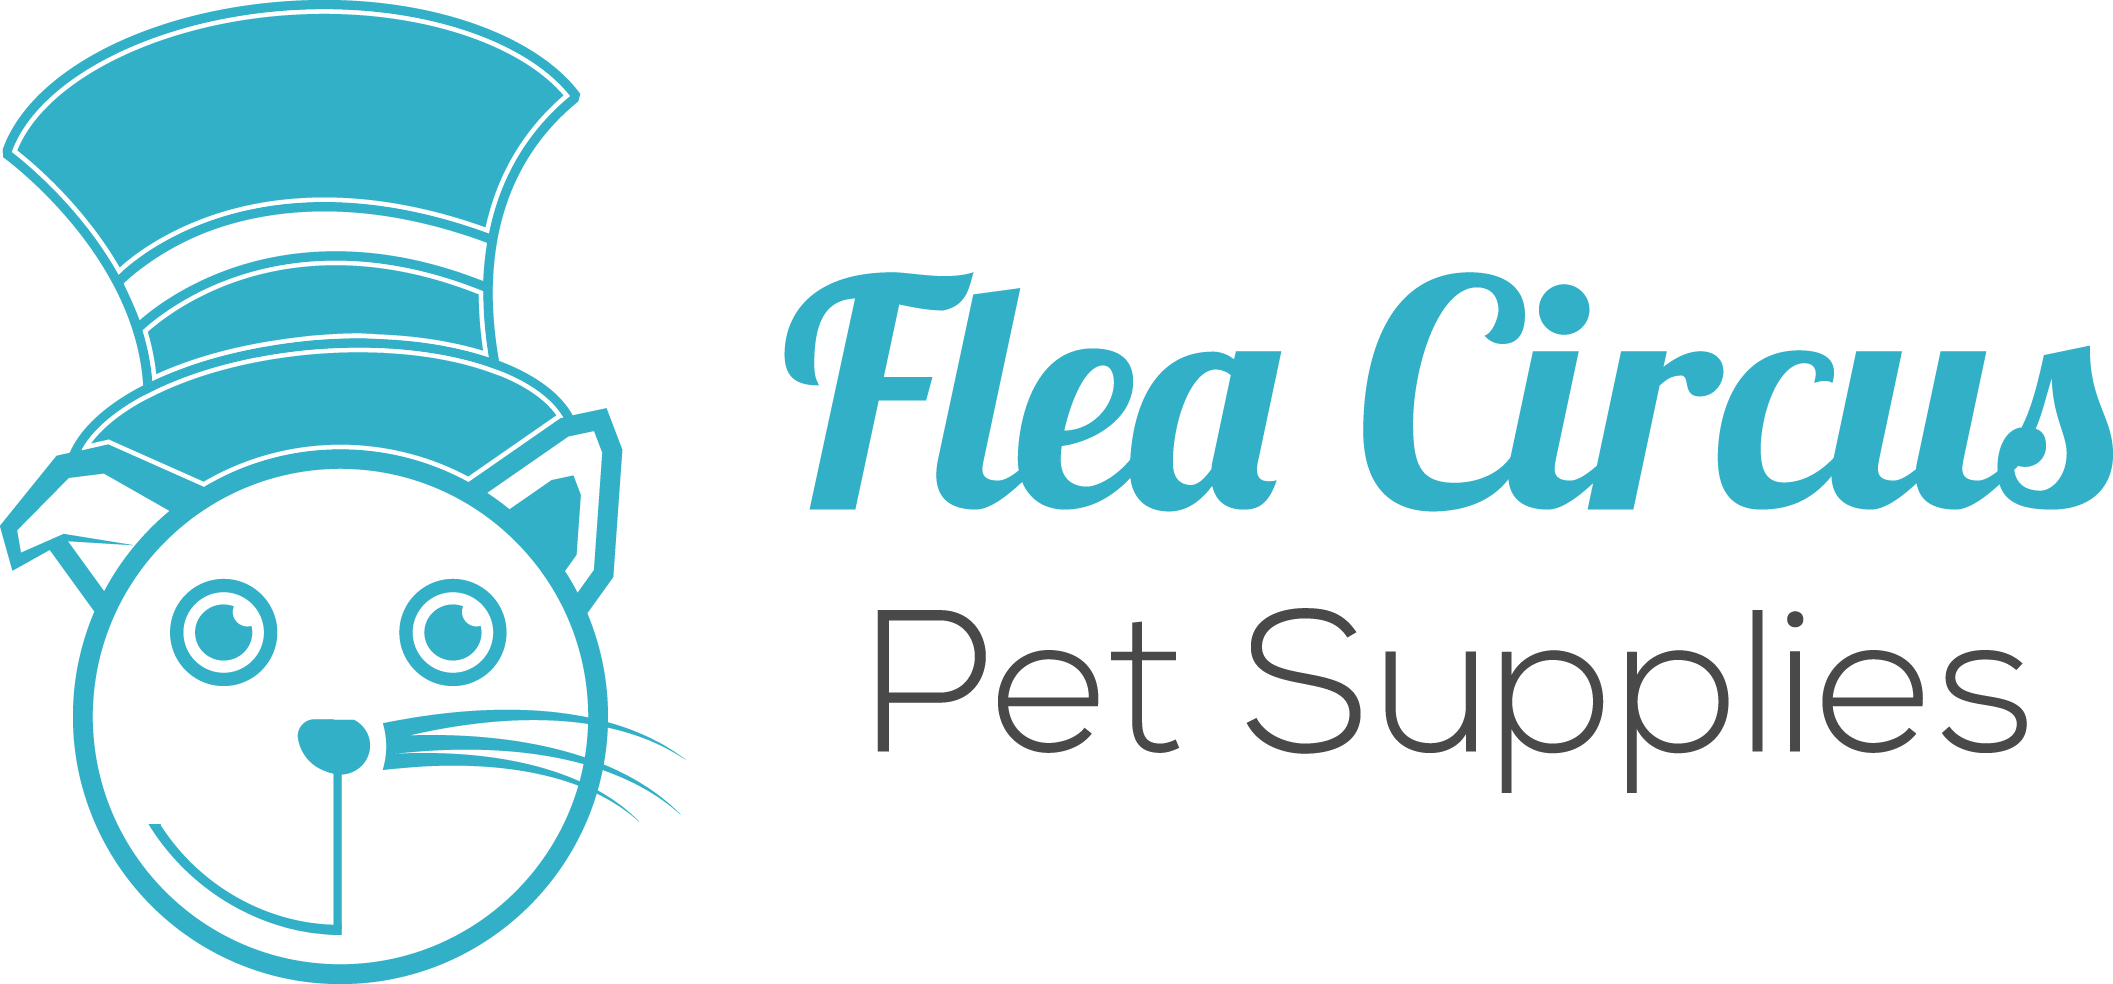 Flea Circus Pet Supplies